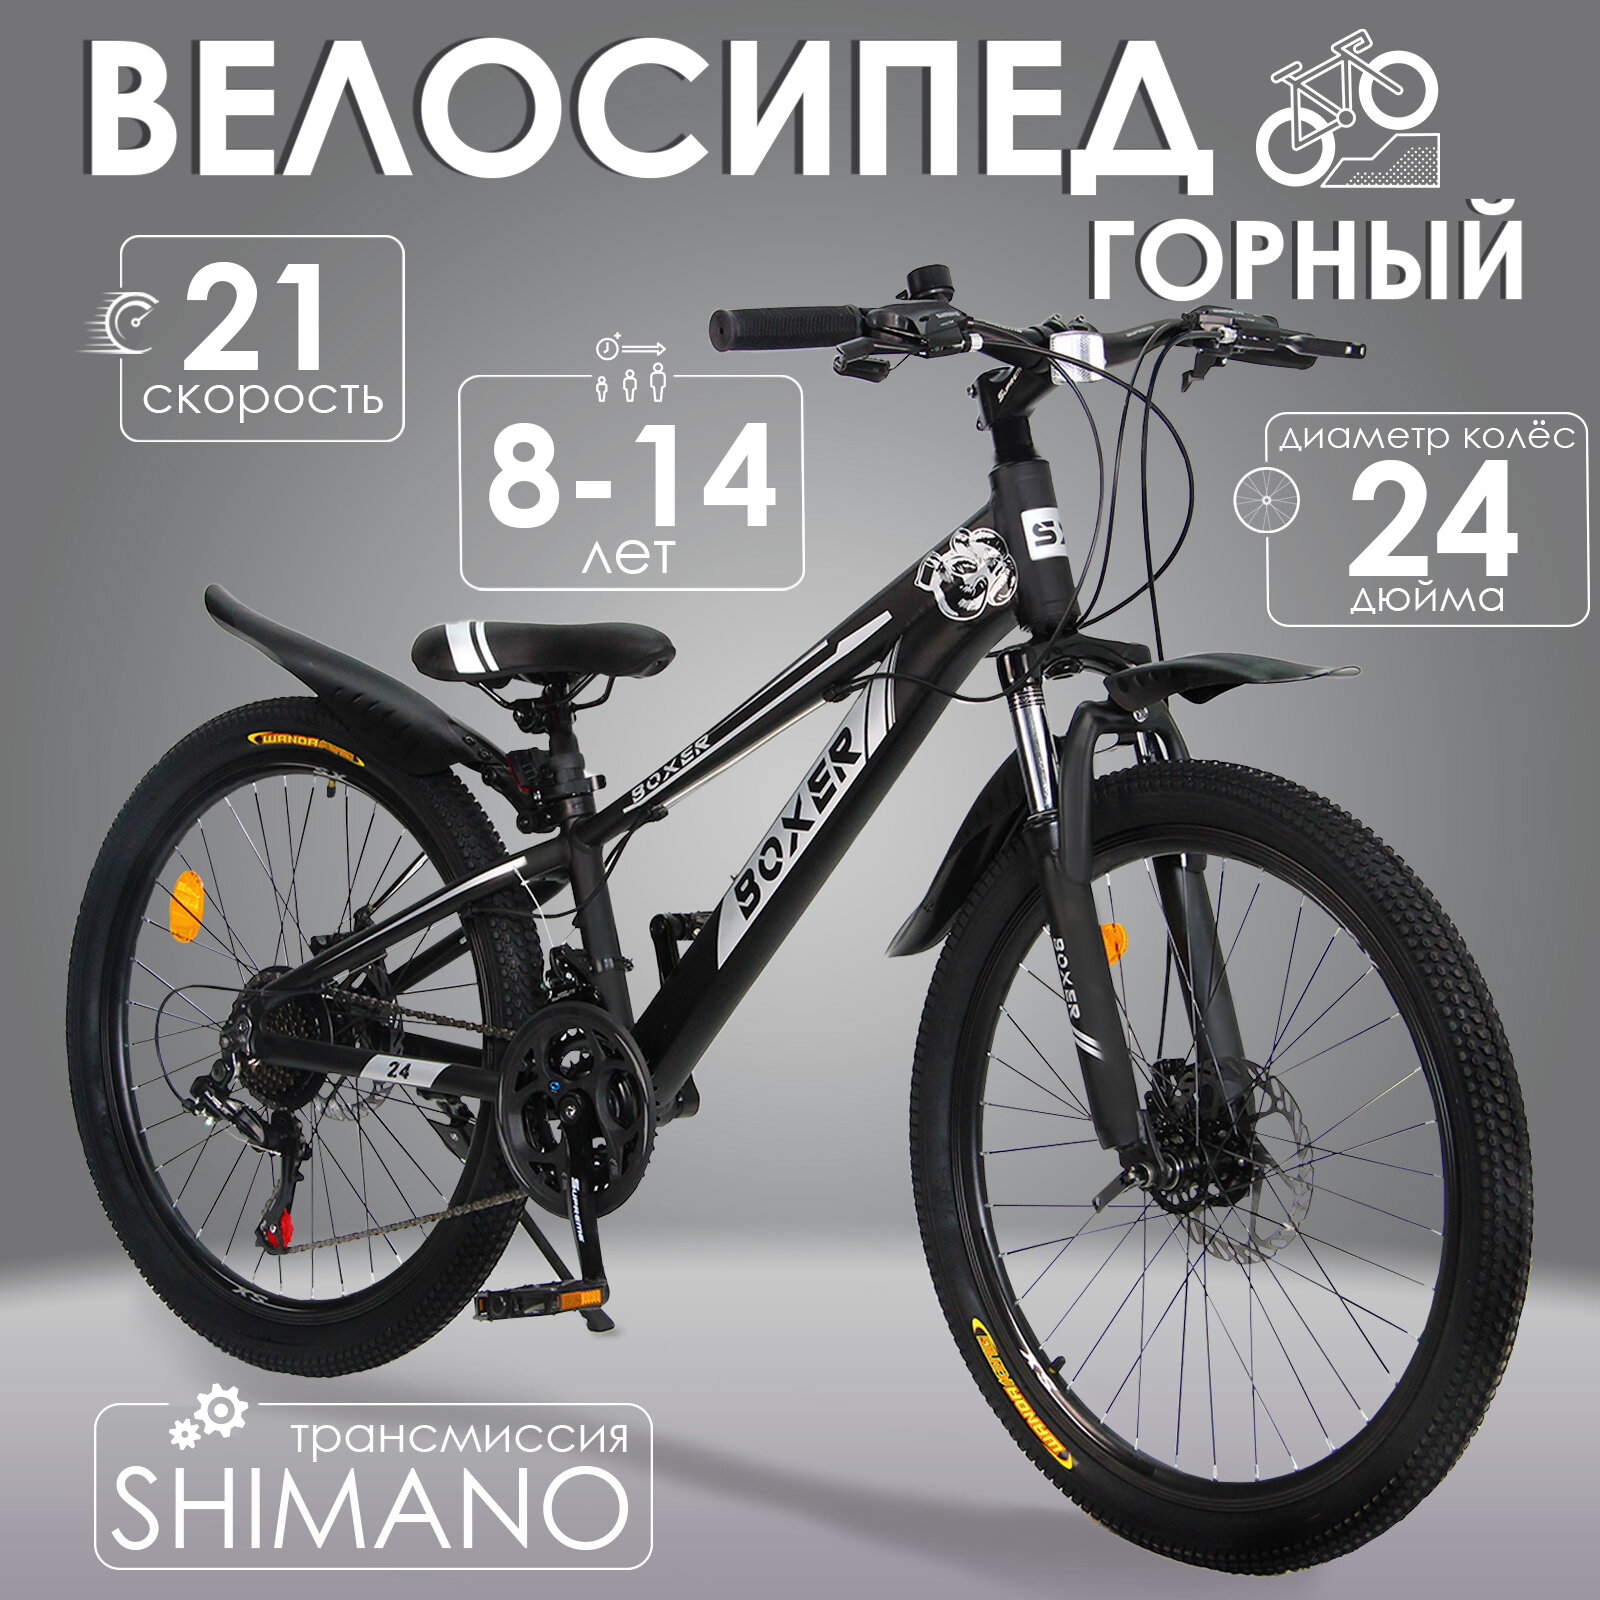 Горный велосипед детский скоростной Boxer 24" черный, 8-14 лет, 21 скорость (Shimano tourney)